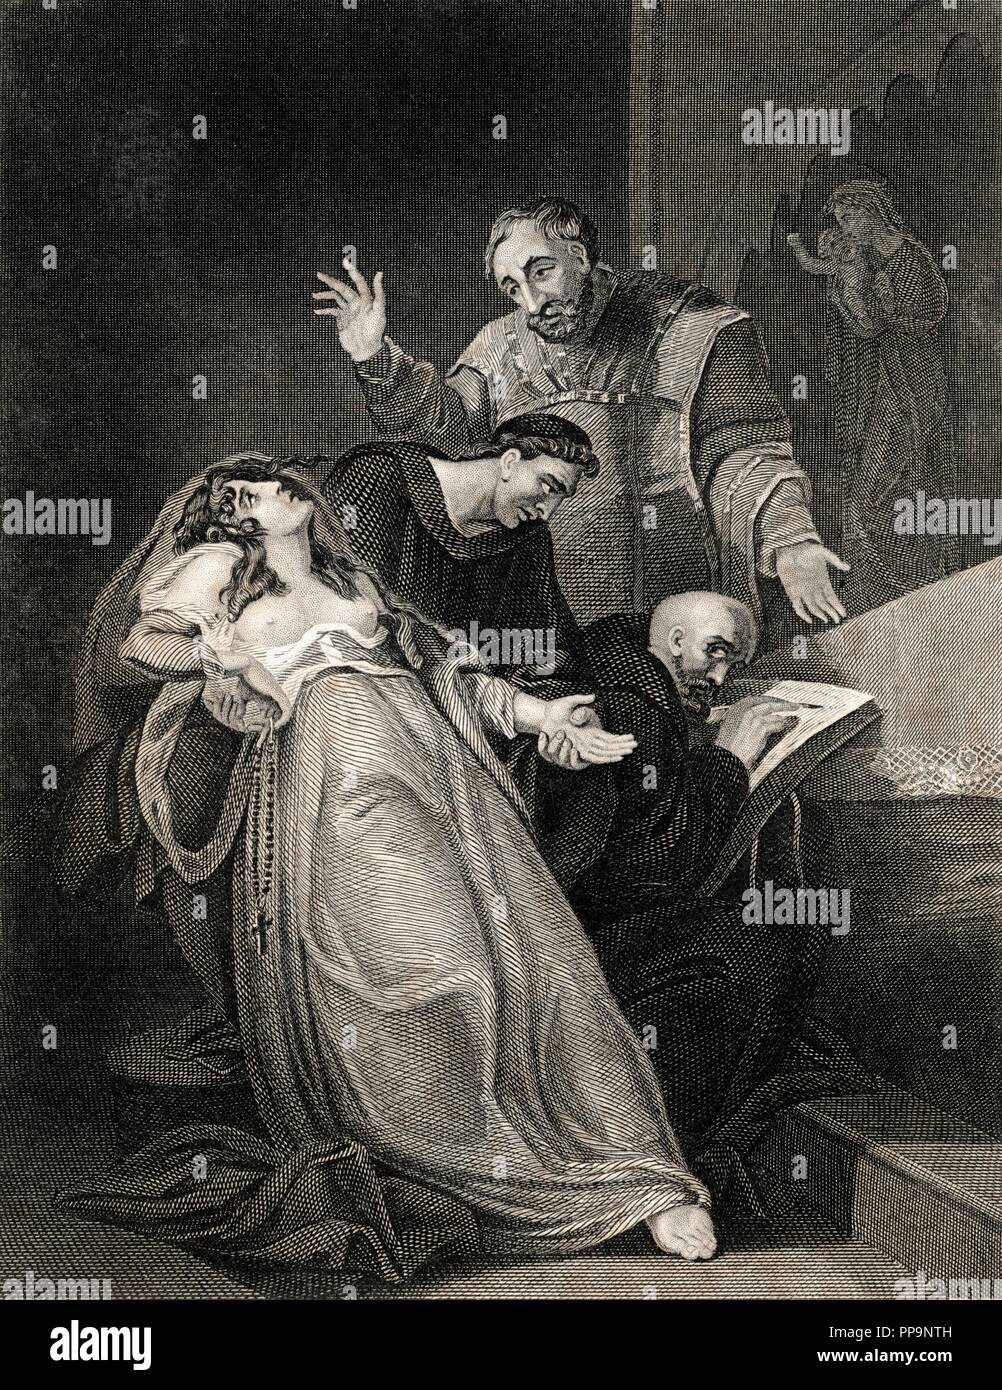 Inglaterra. La monja católica Elizabeth Barton (1506-1534), conocida como la doncella de Kent,  ejecutada por sus profecías contra el matrimonio del rey Enrique VIII y Ana Bolena. Grabado de 1864. Stock Photo